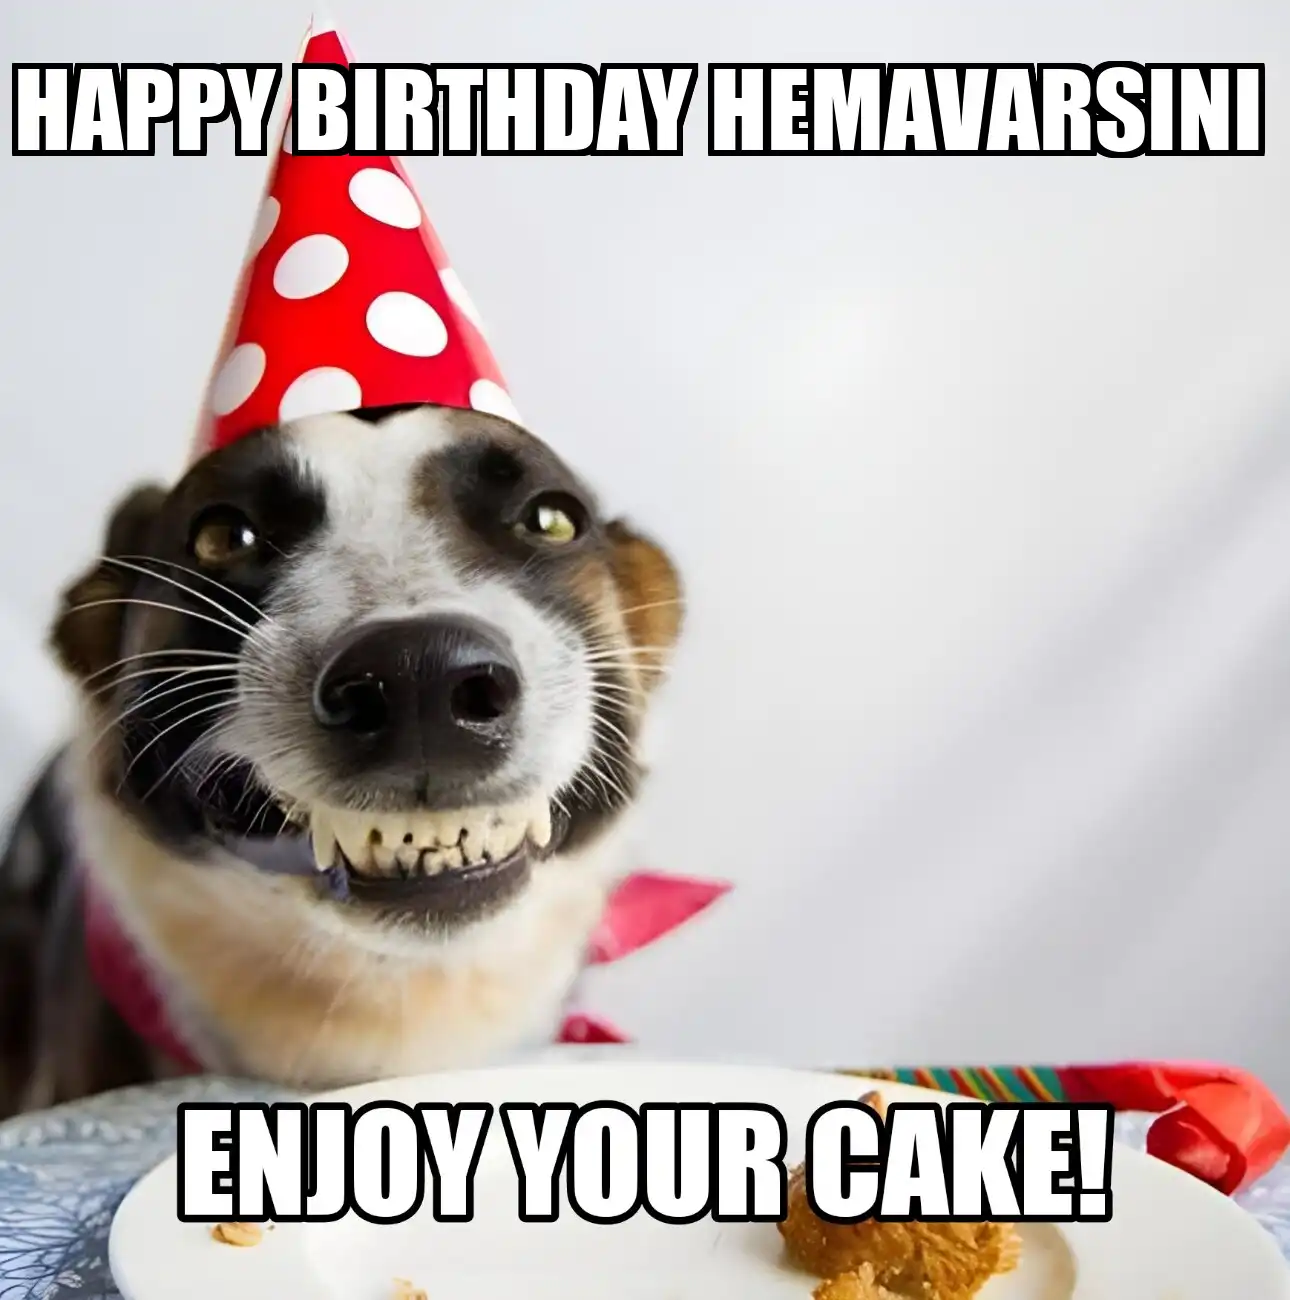 Happy Birthday Hemavarsini Enjoy Your Cake Dog Meme